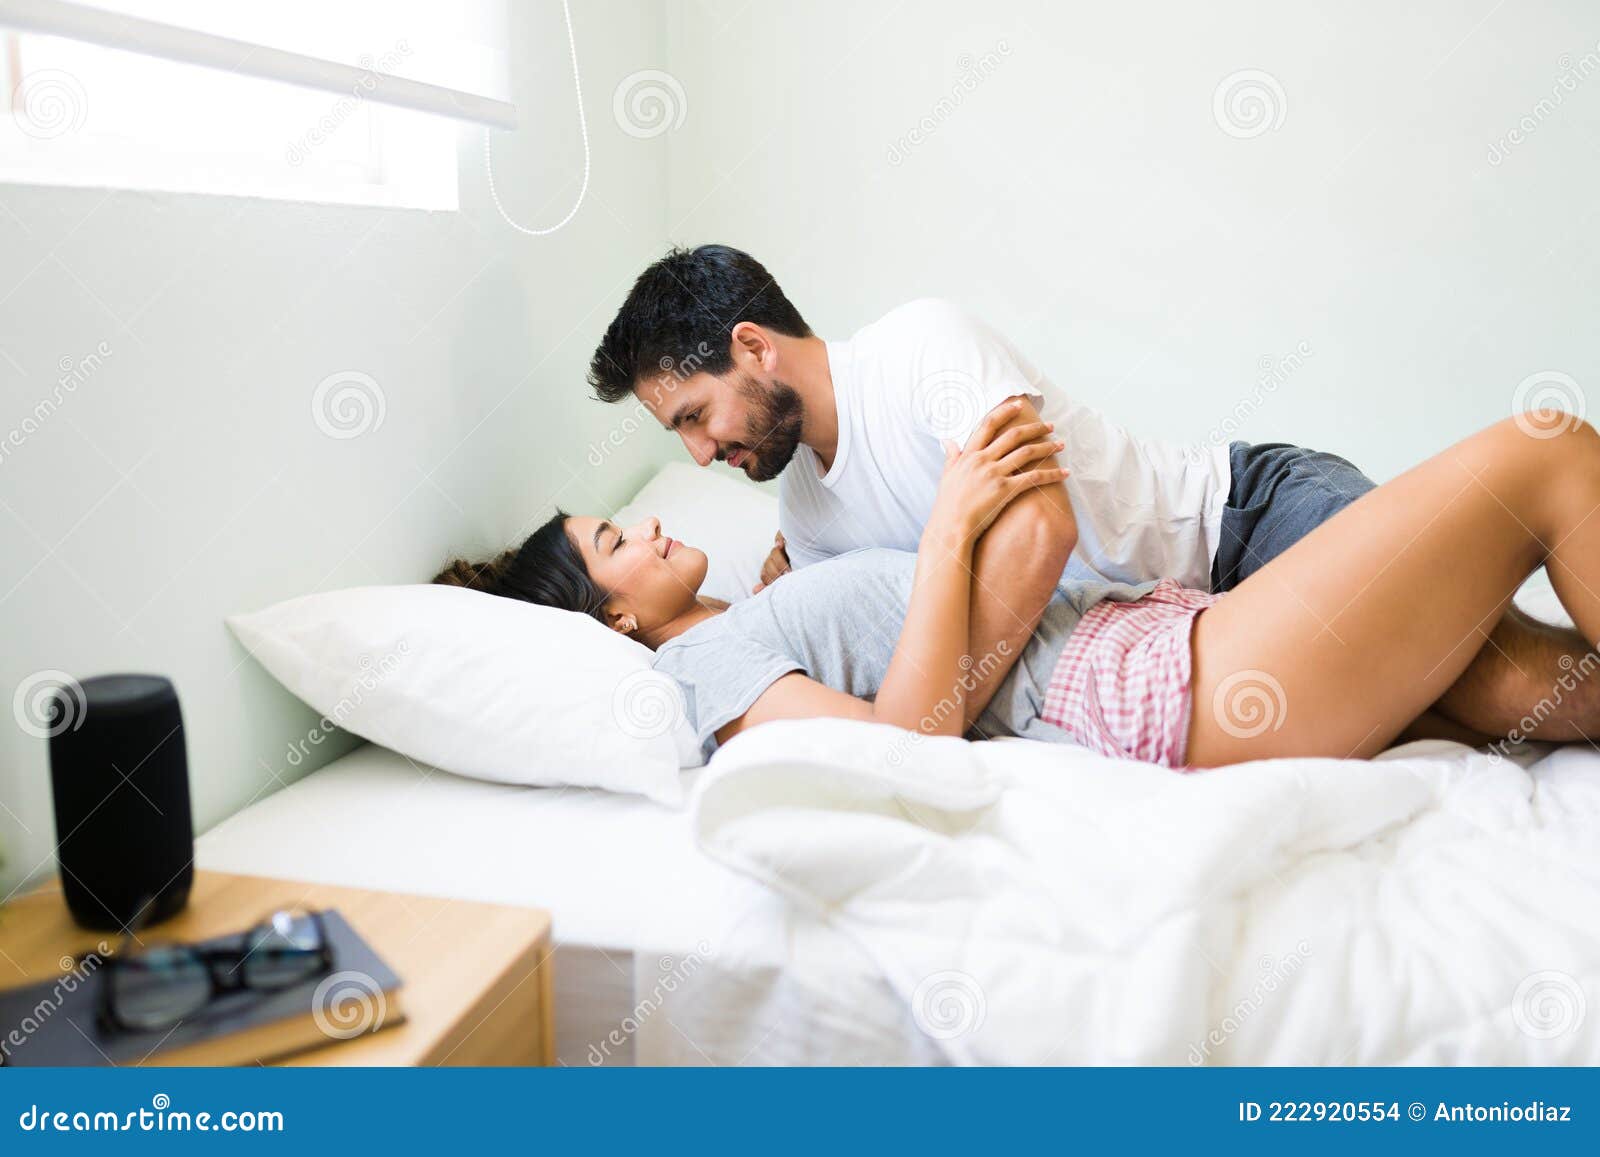 sex with girlfriend in bedroom